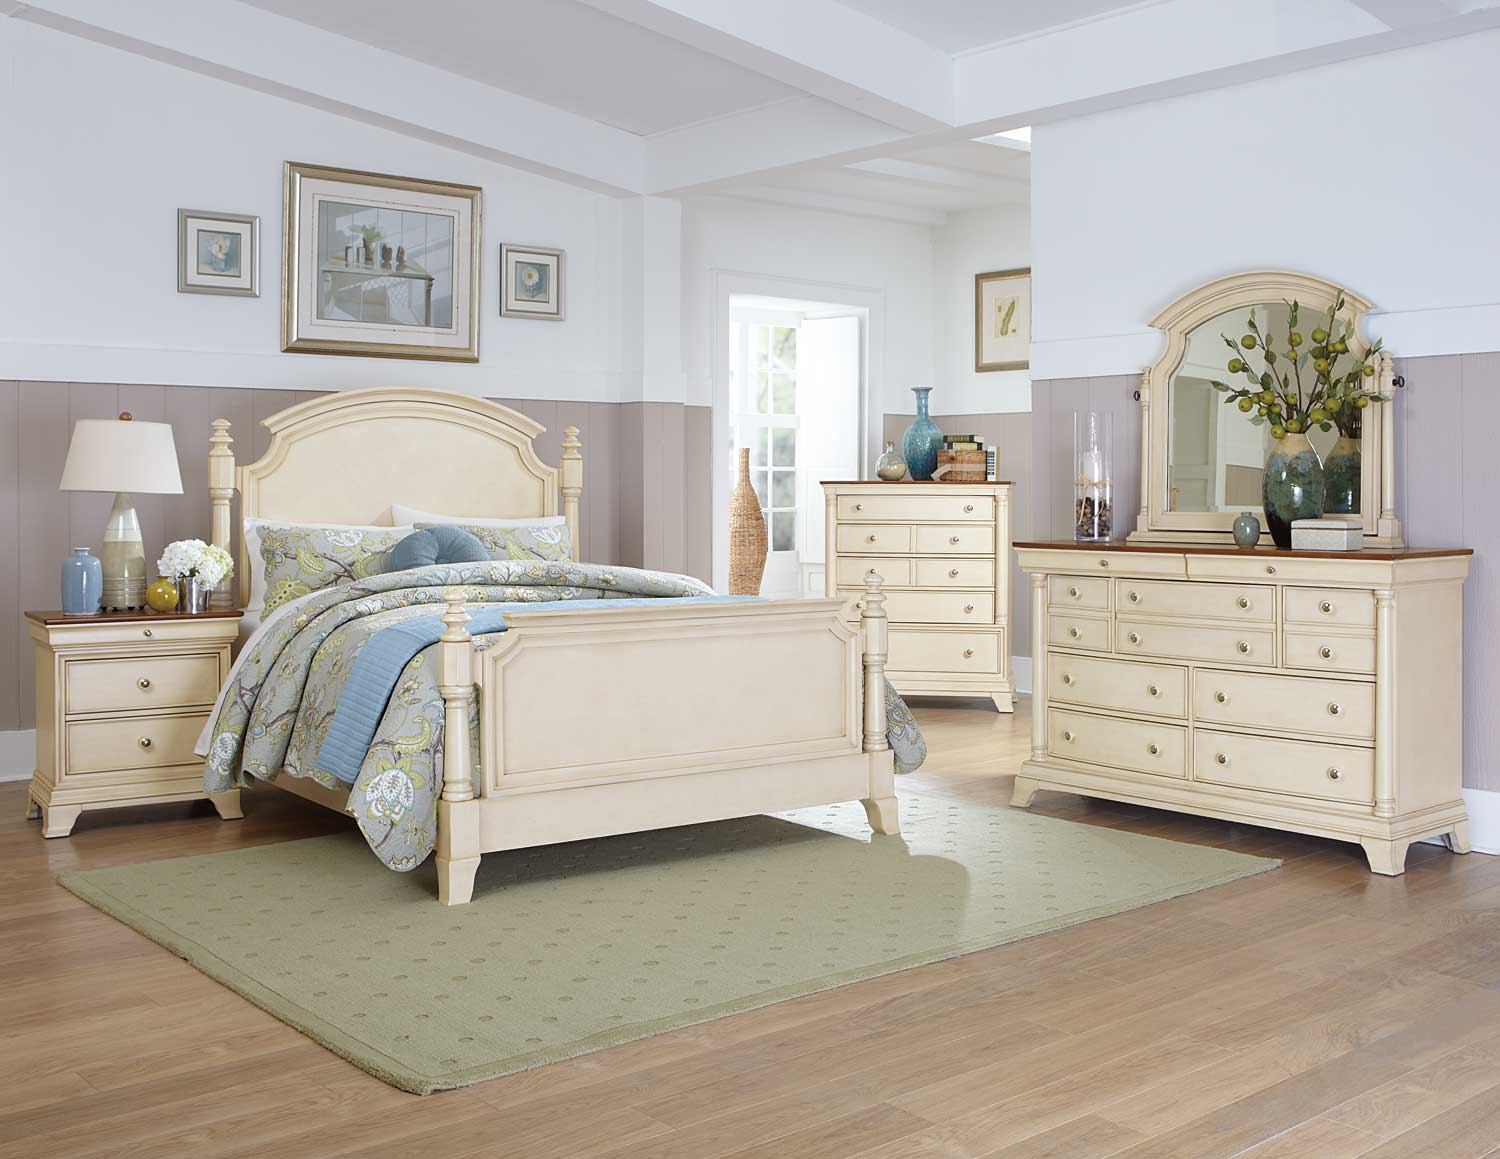 cream bedroom furniture ideas photo - 7